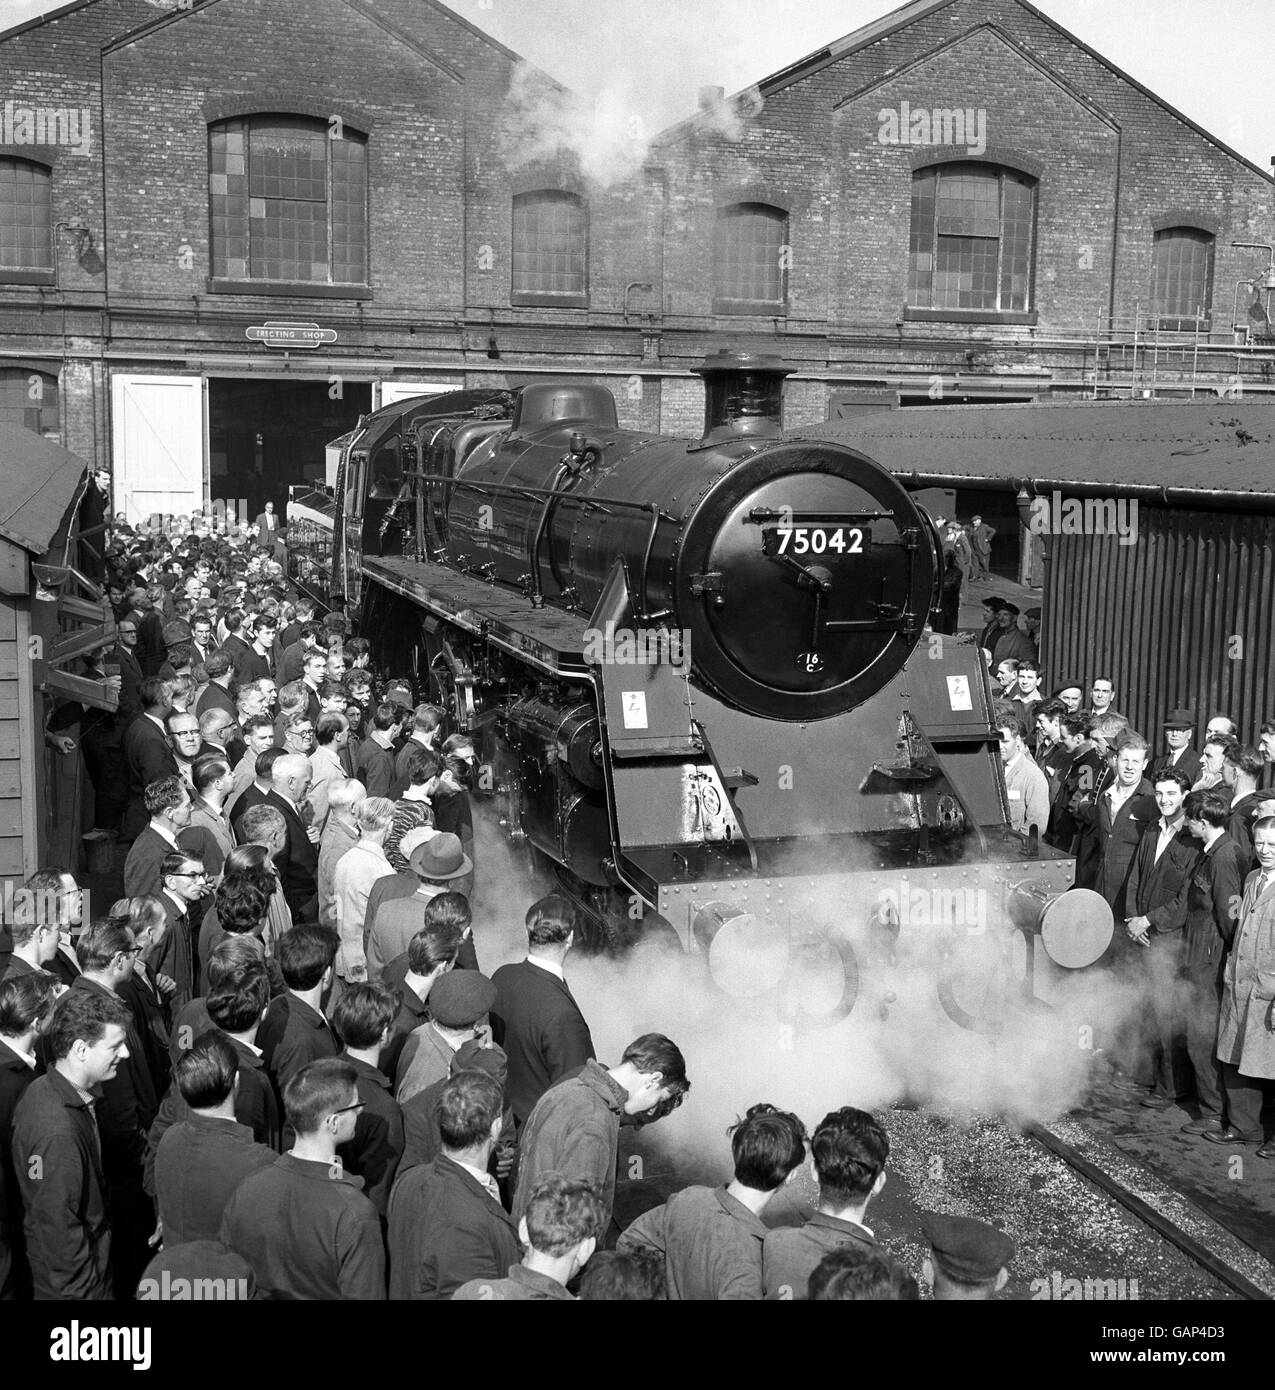 Derby, der Geburtsort unzähliger Hunderter Dampflokomotiven in der Vergangenheit, sagte Auf Wiedersehen zum Eisenpferd für immer, als Nummer 75042, ein Zugmaschine der Baureihe 4 4-6-0, Hatte eine bürgerliche senden unter der Annahme der unglücklichen Unterscheidung, die letzte Dampflokomotive zu erhalten, eine allgemeine Reparatur bei der British Railway Works. Stockfoto